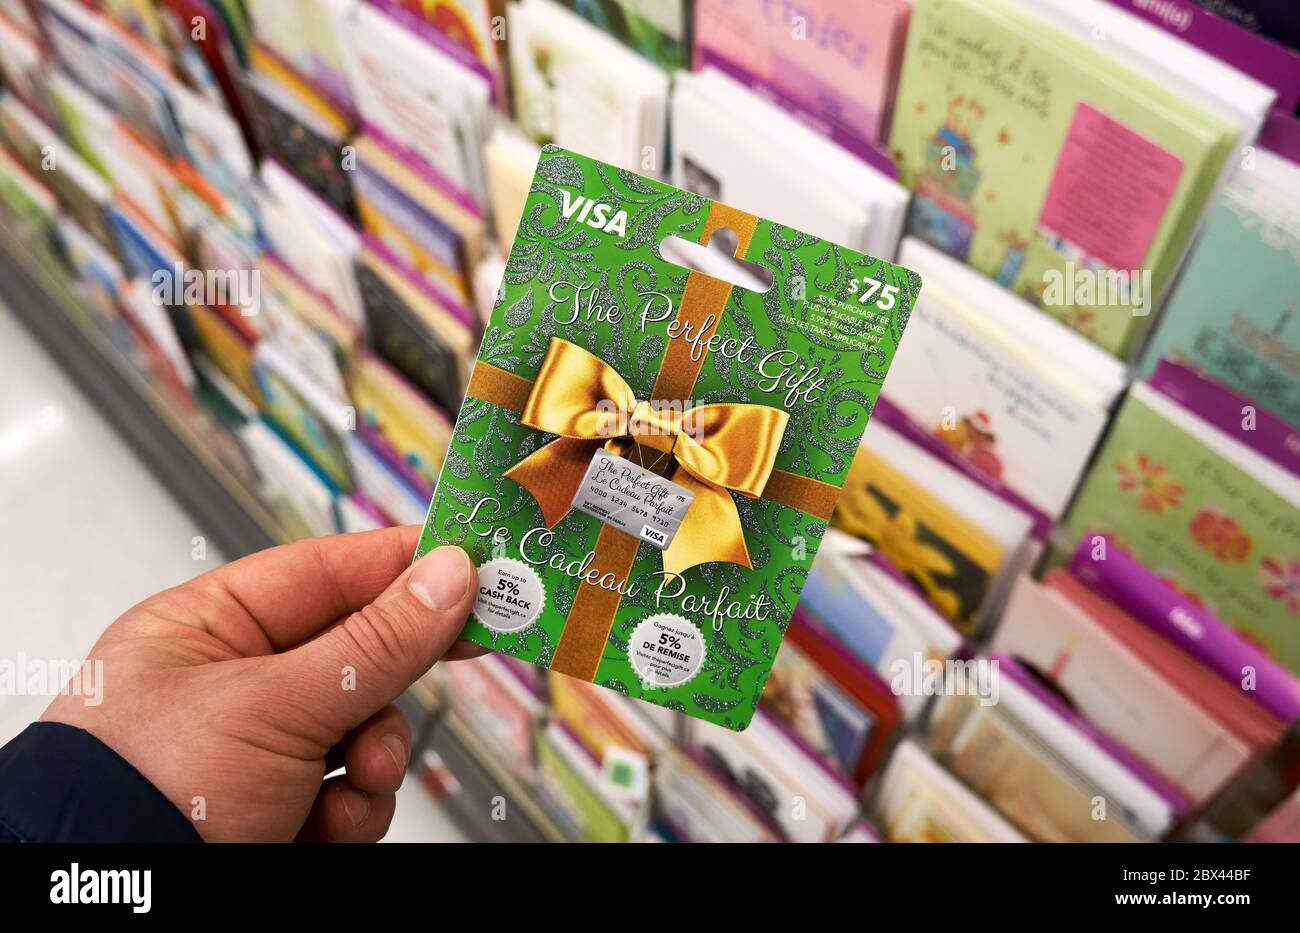 pasado Incitar Validación Montreal, Canadá - 03 de mayo de 2020: Tarjeta de regalo Visa en una mano  sobre un stand con tarjetas de regalo. Visa es una multinacional  estadounidense de servicios financieros corporati Fotografía